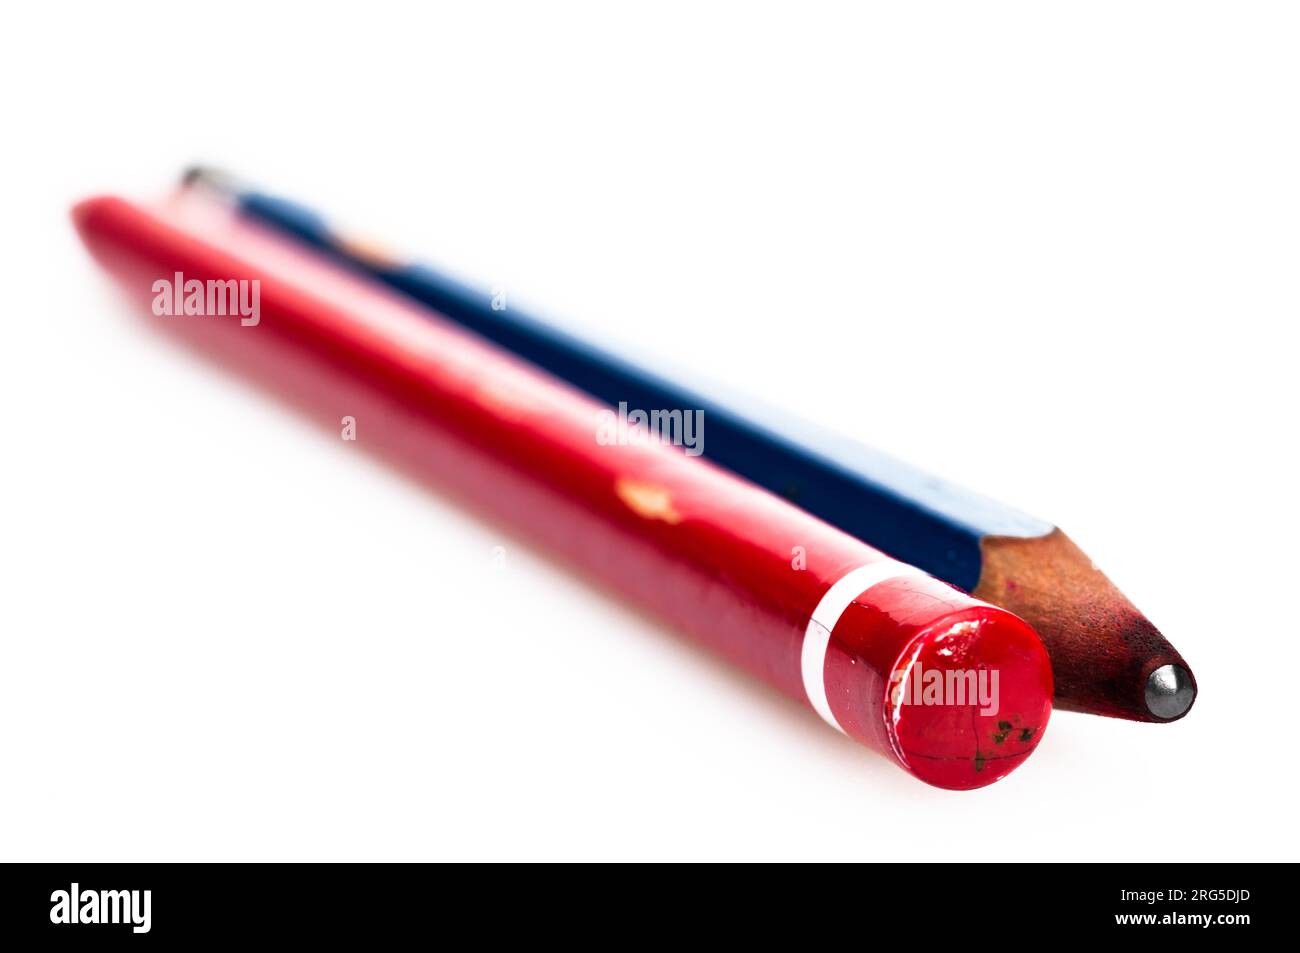 La matita rossa e nera sono gli strumenti più basilari degli studenti e sono molto utilizzati dagli adulti. Foto Stock